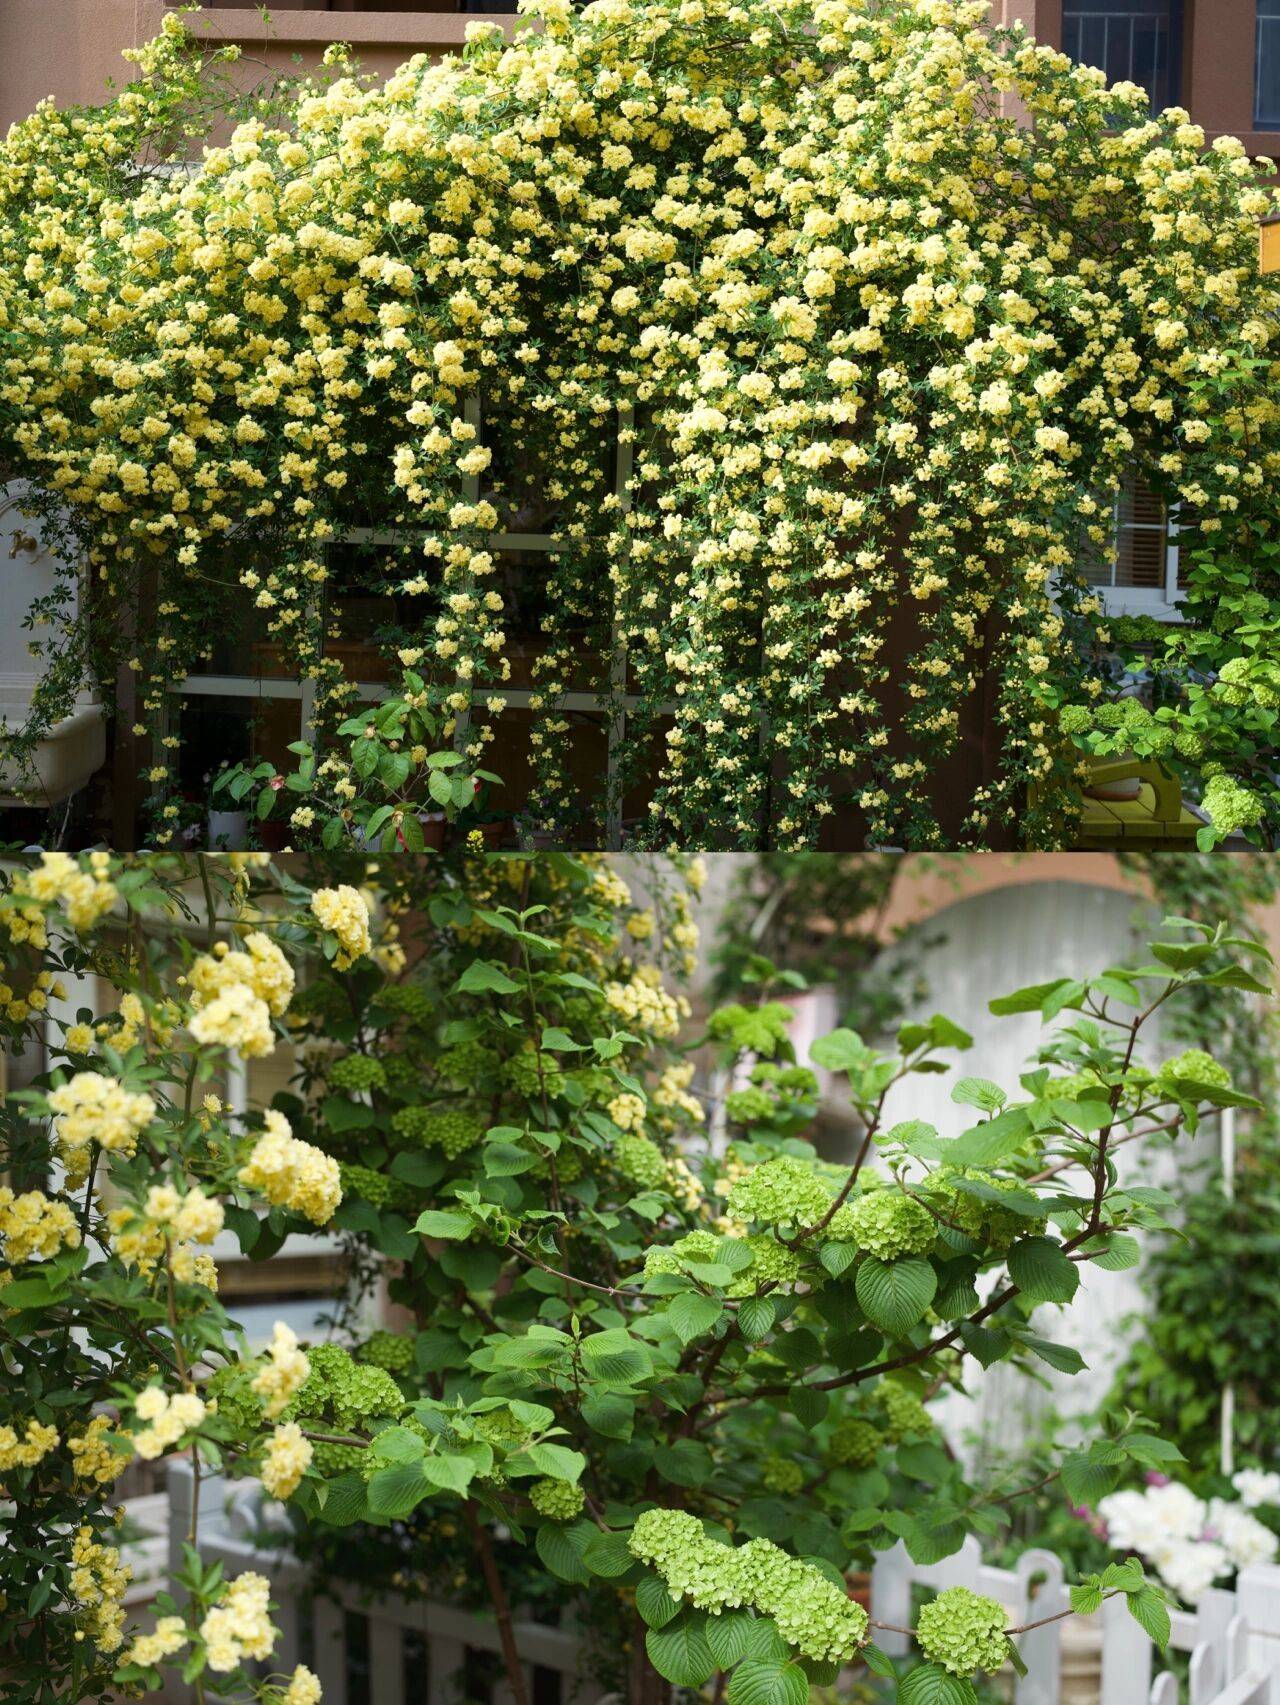 Ngẩn ngơ trước khu vườn nhà 60m² đẹp như tranh vẽ, thác hoa phủ vàng ruộm cả một góc - Ảnh 7.